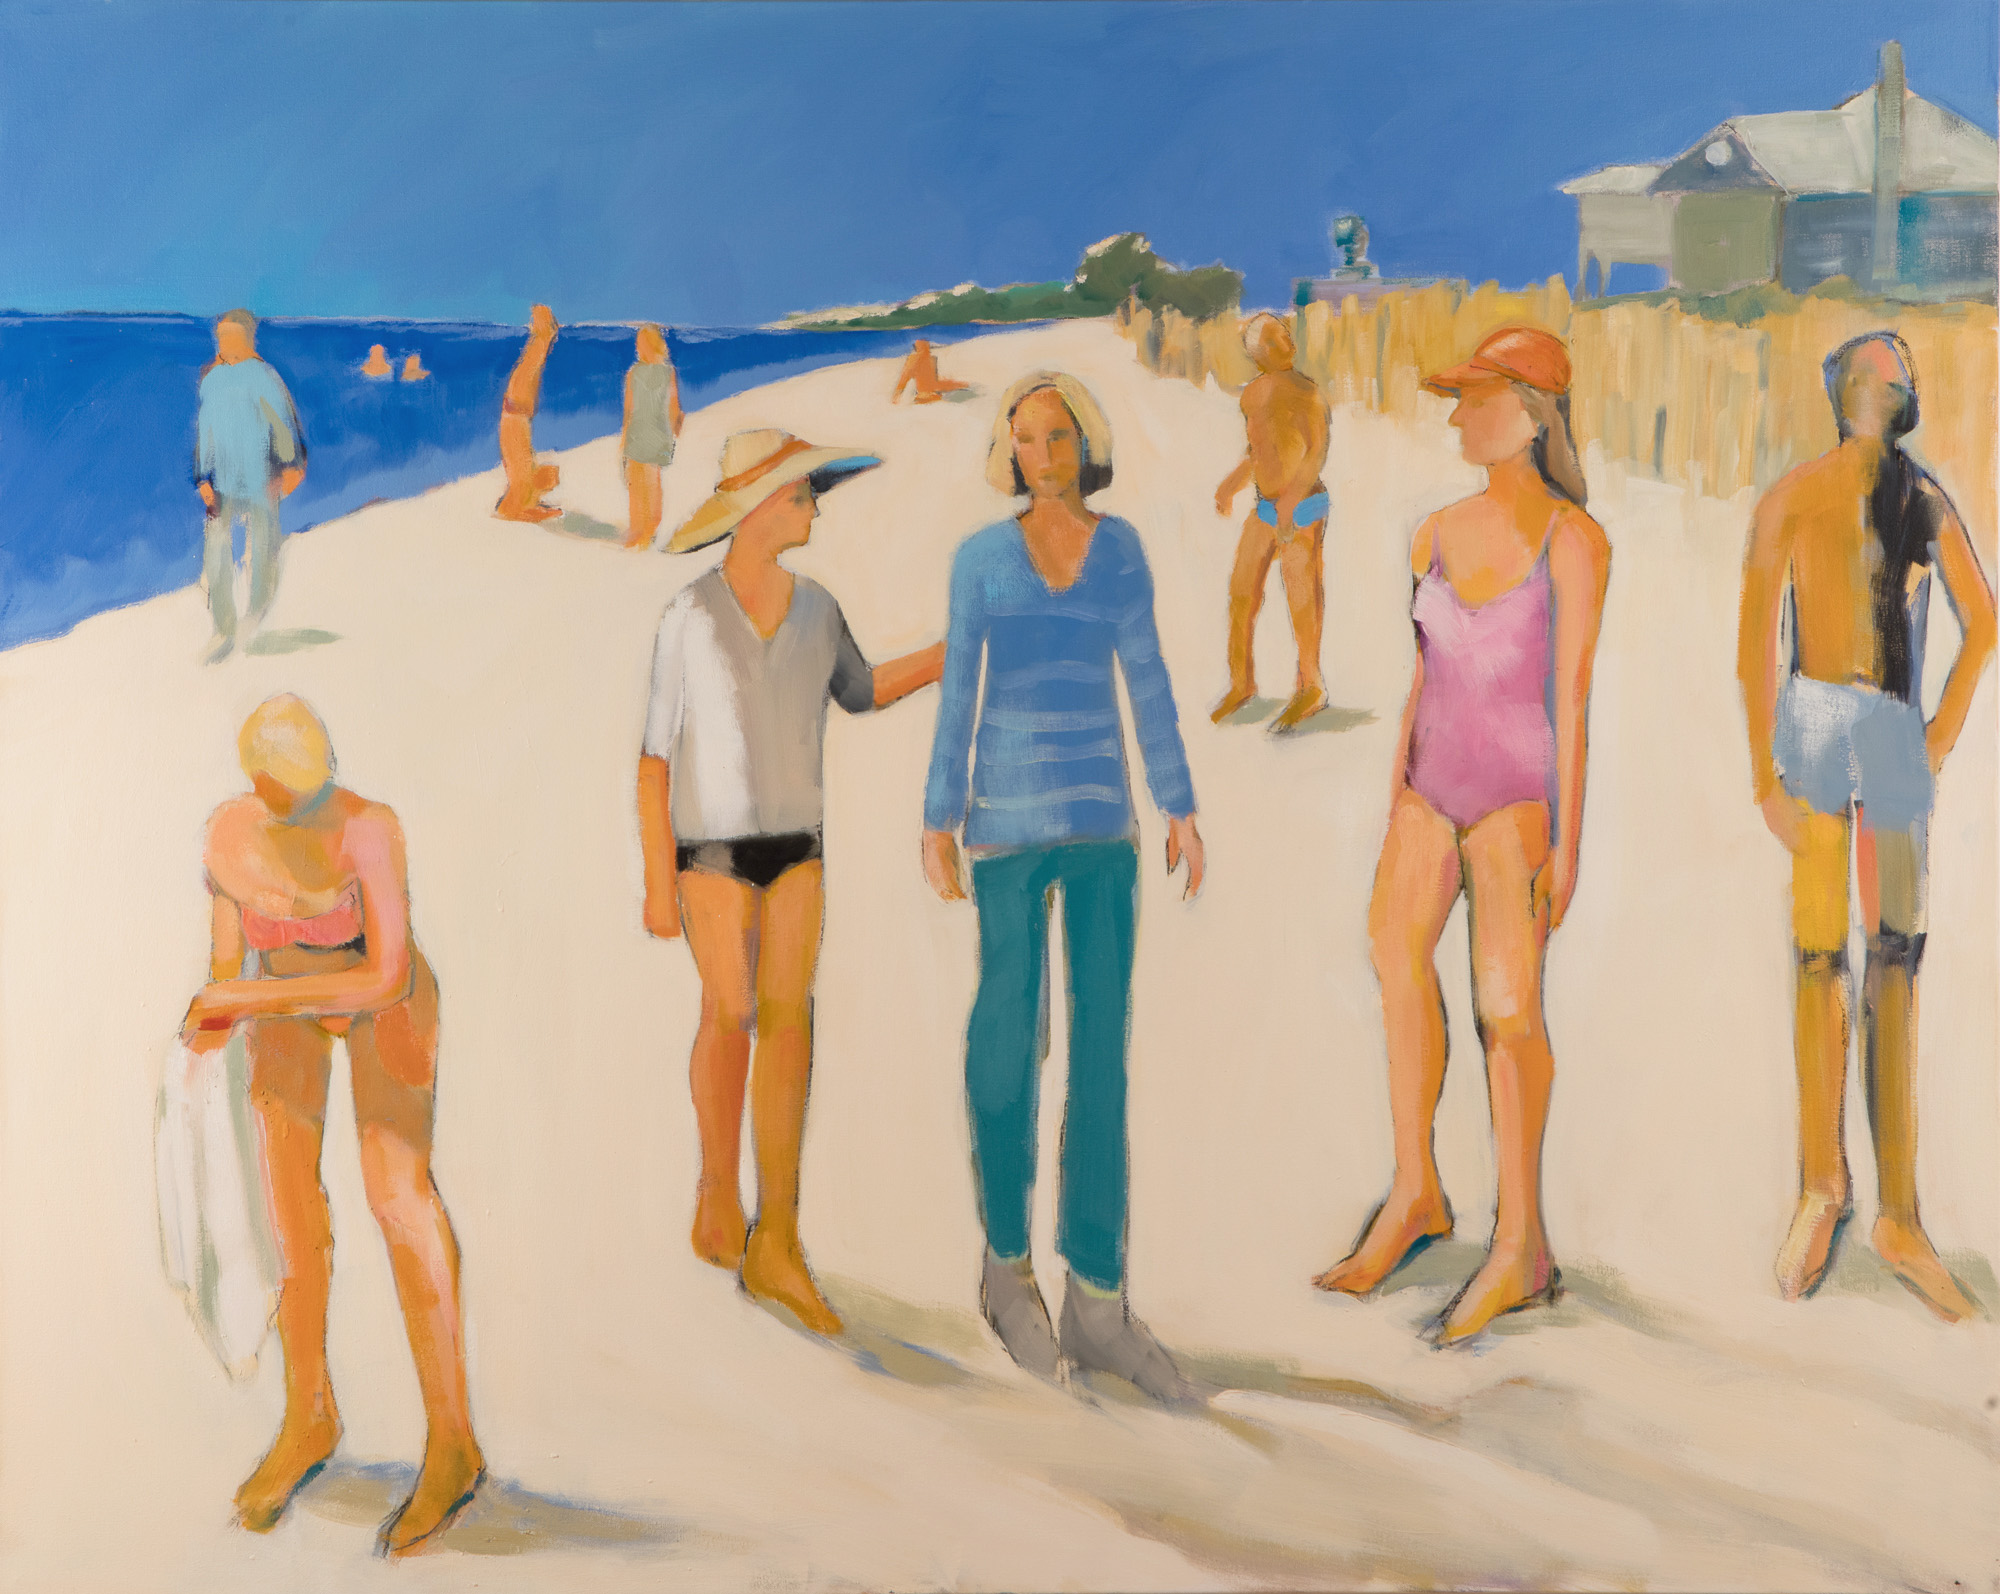  Sarah Benham -  Beach Walkers  Oil on Canvas, 48 x 60 inches 